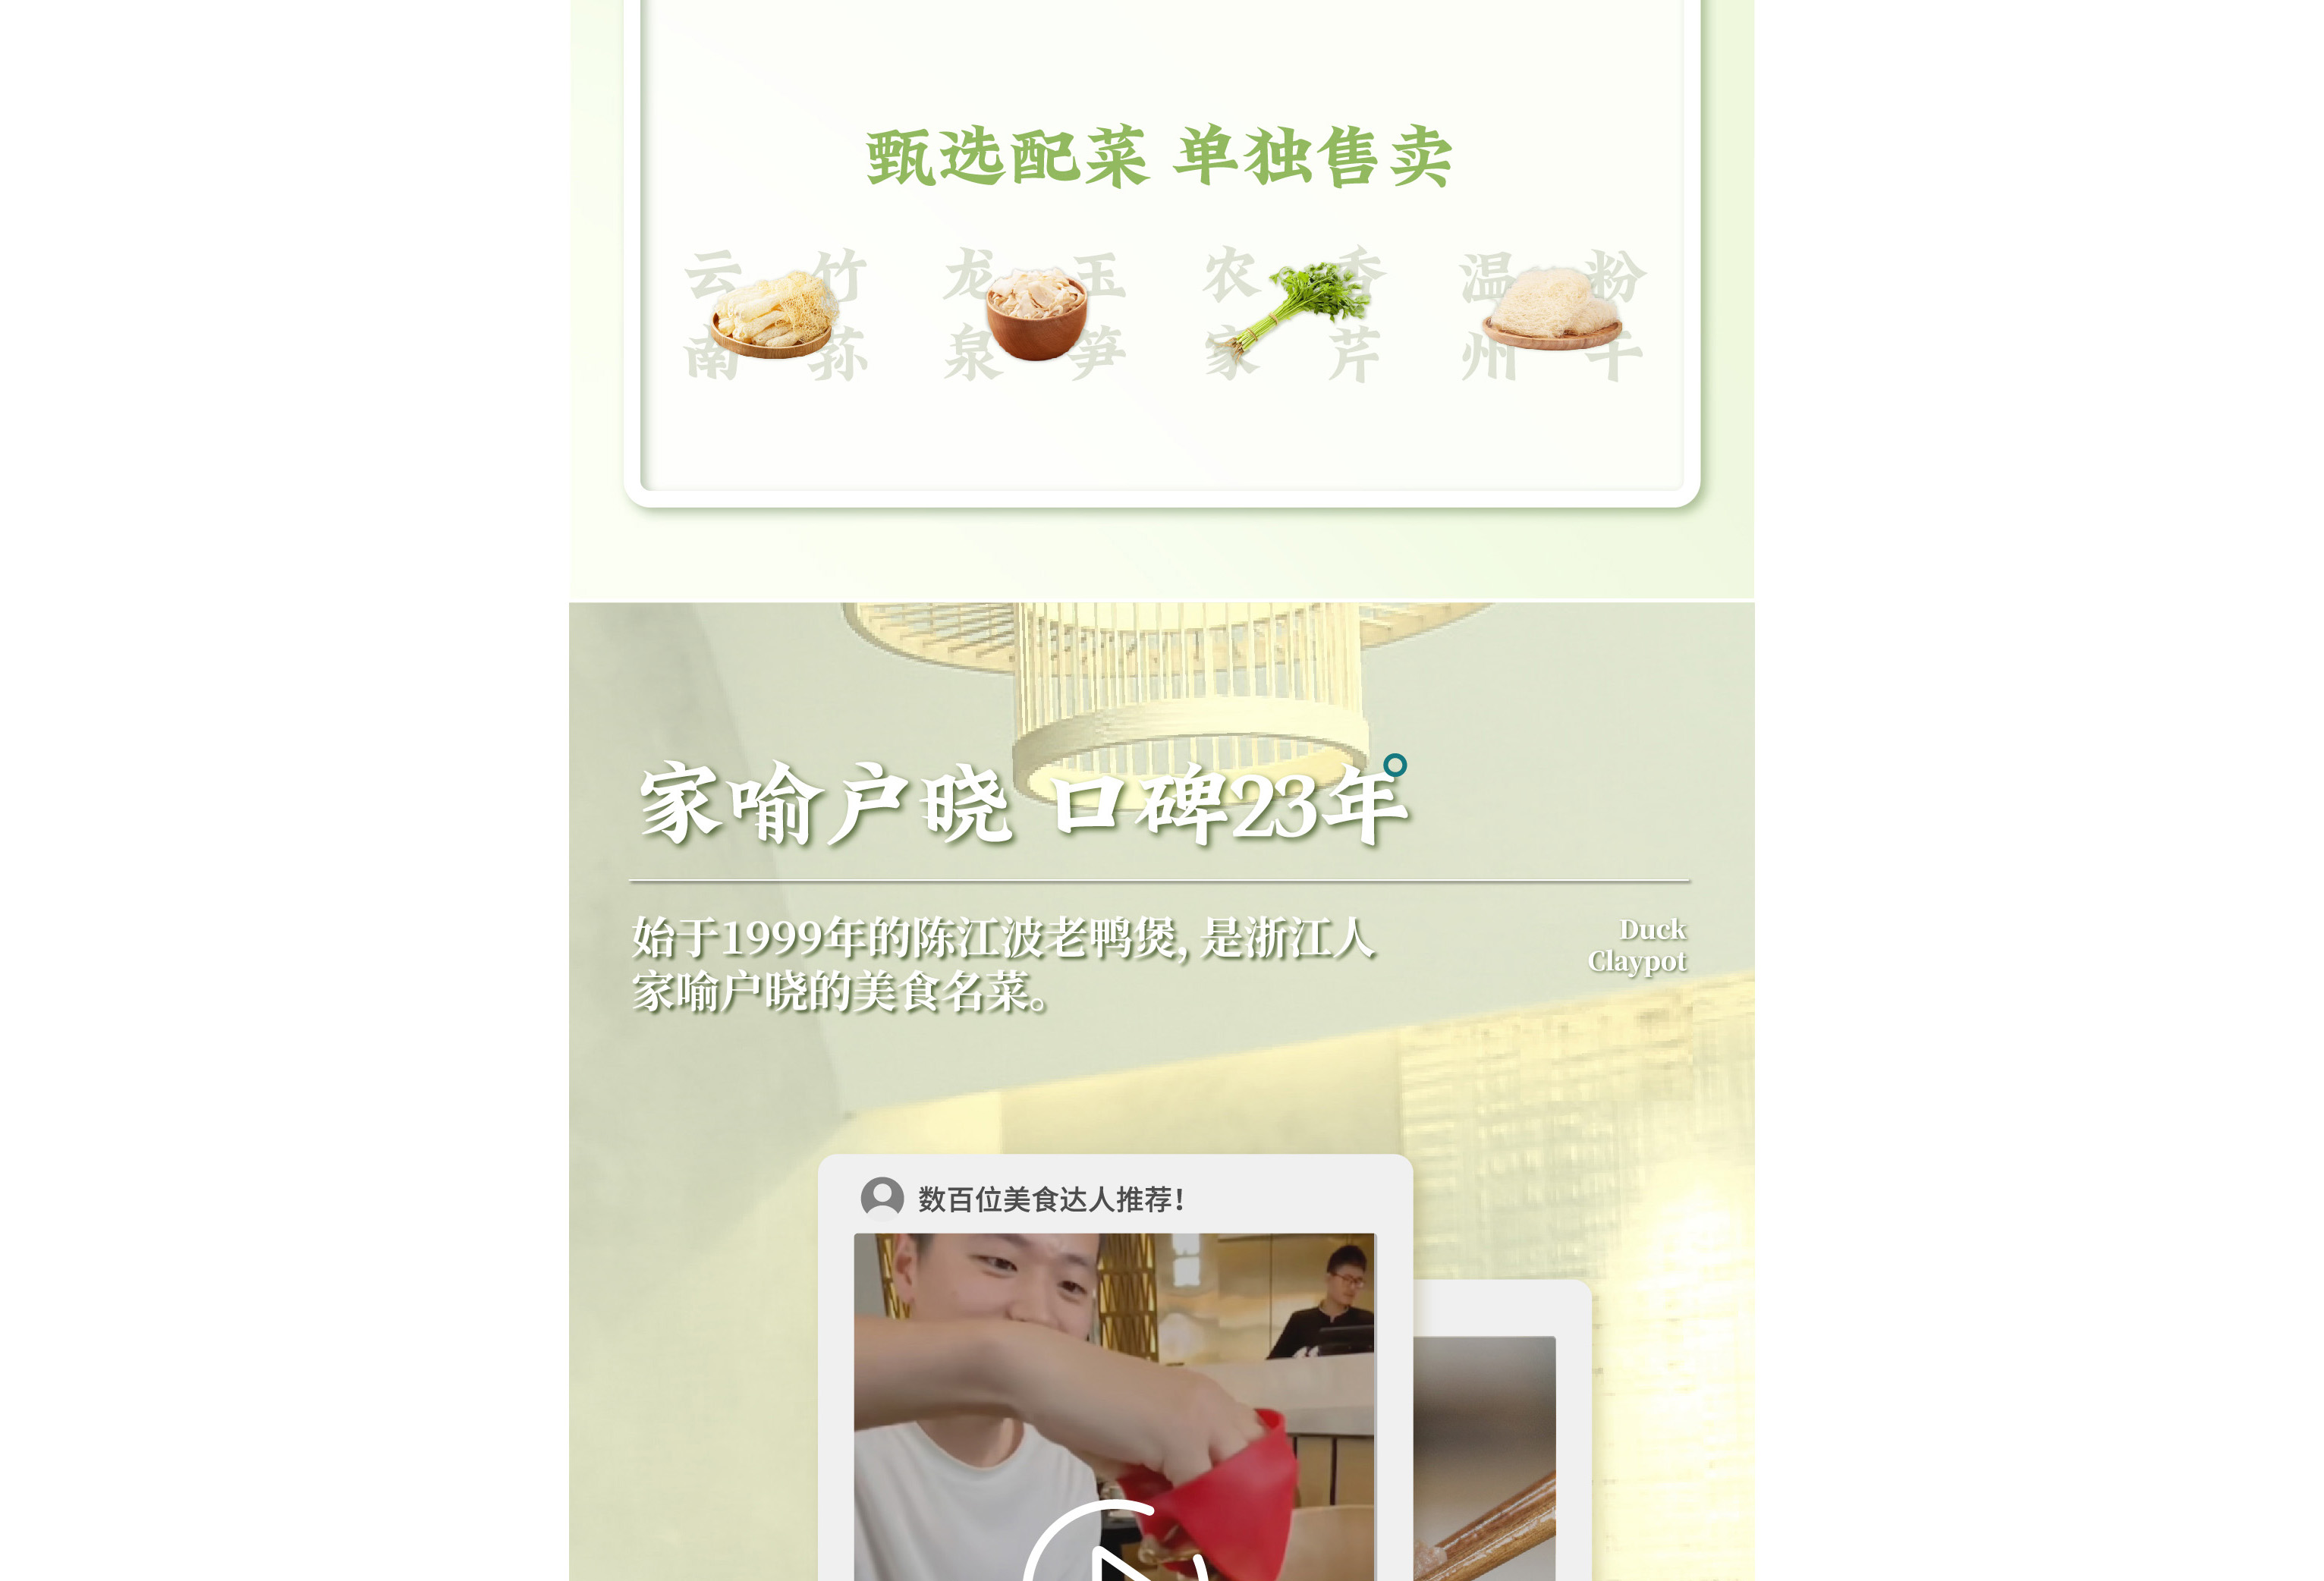 陳江波老鴨煲品牌策劃設計-餐飲vi設計-杭州達岸品牌策劃設計公司